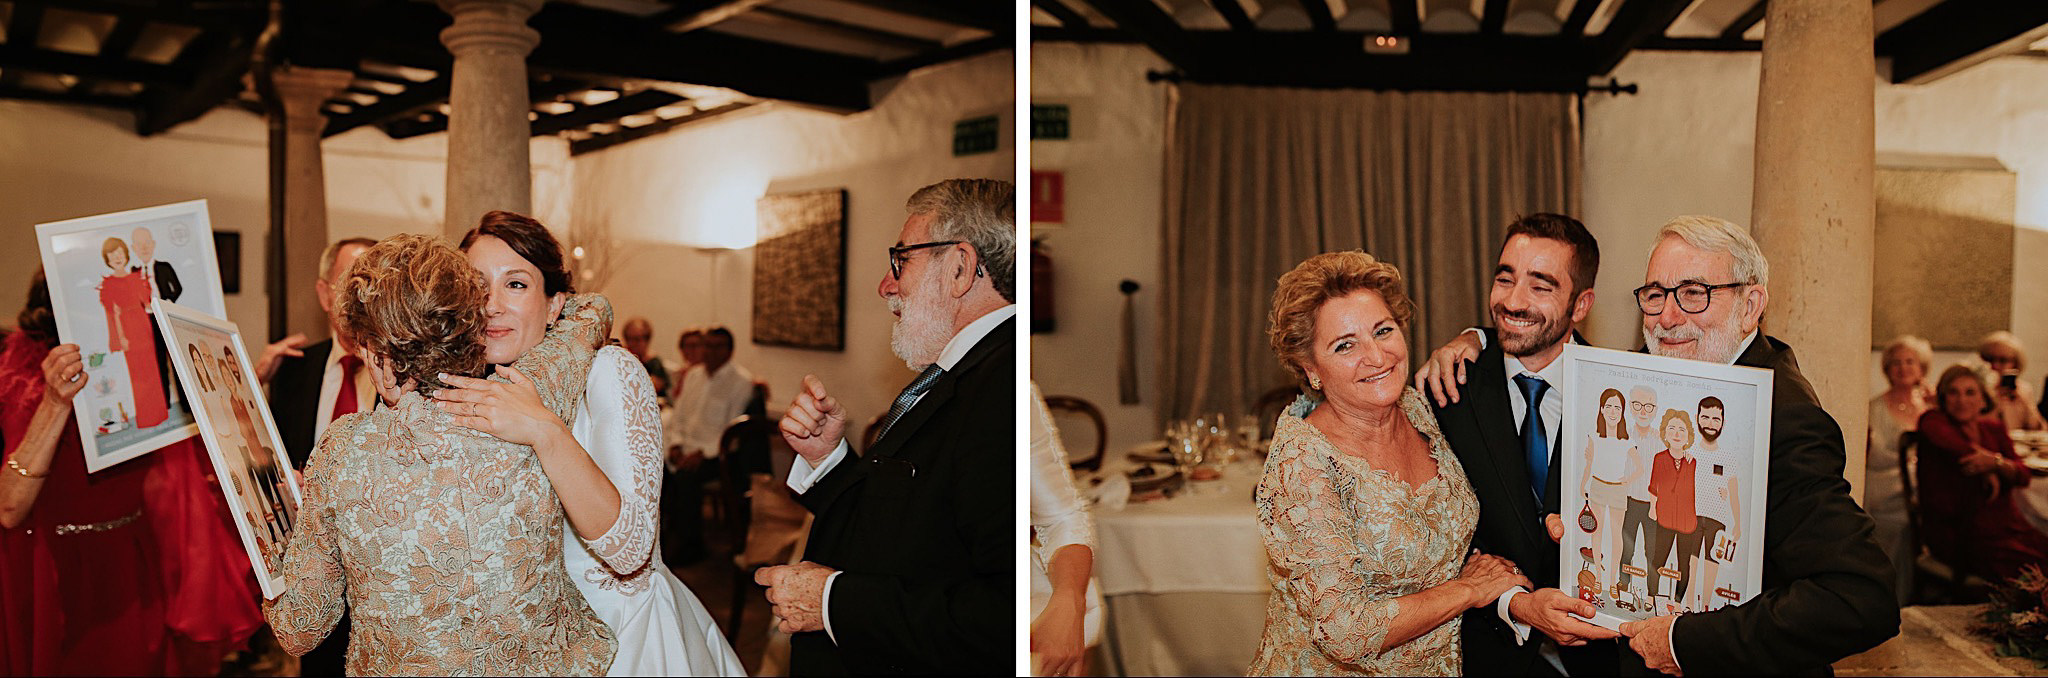 alvaro sancha boda en el palacio de meres asturias 141